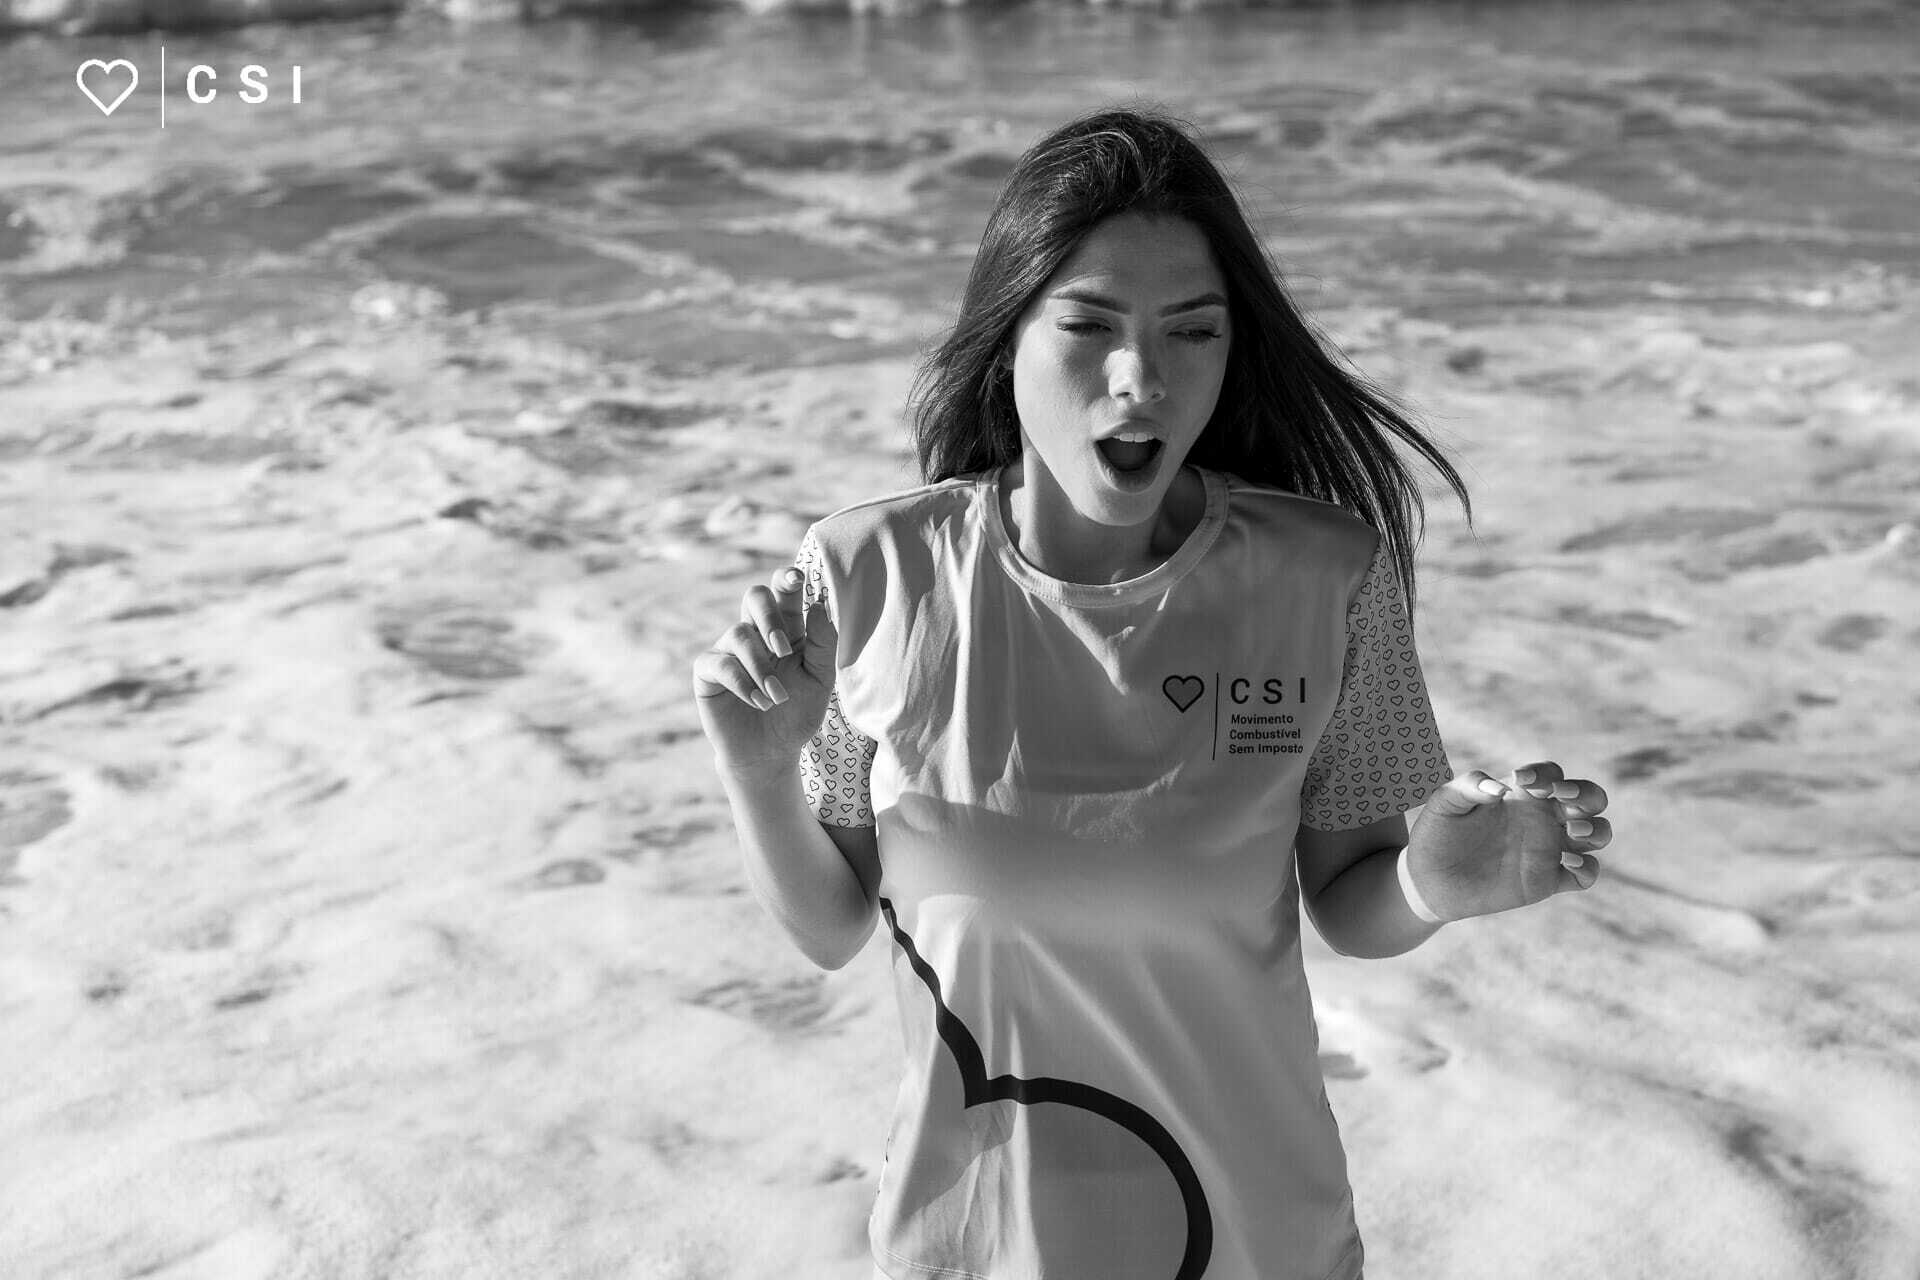 Ensaio fotografico com modelo na praia tomando susto pela agua fria do mar do recreio dos bandeirantes - foto em preto e branco